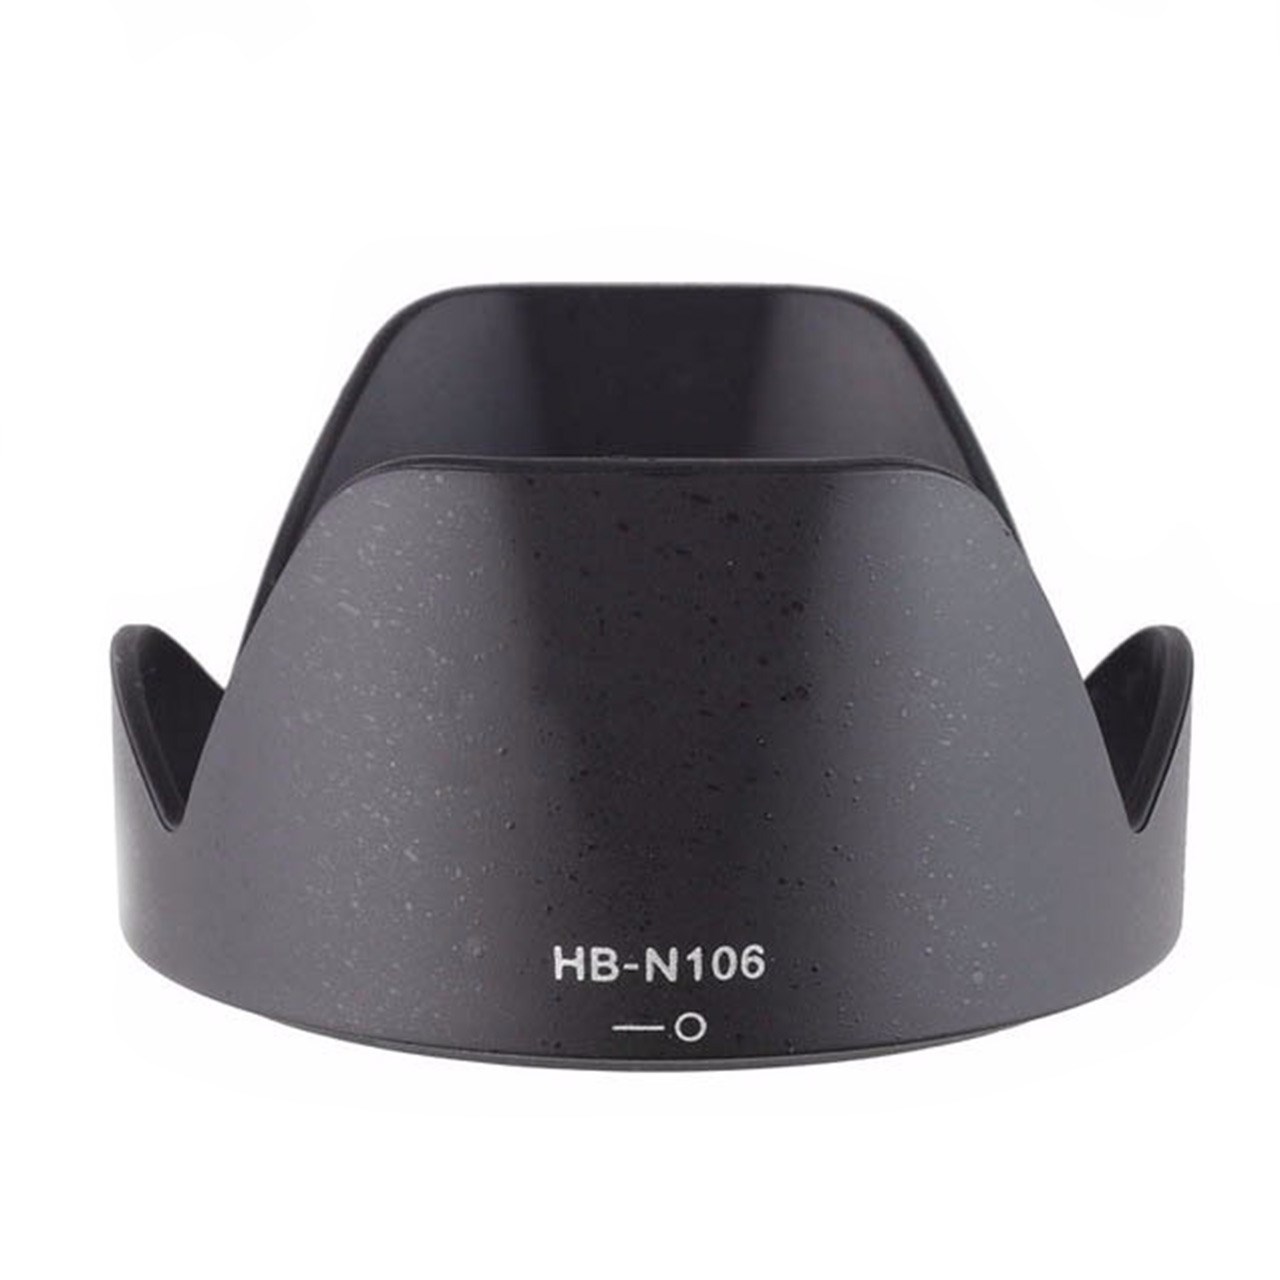 هود لنز نیکون مدل HB-N106 مناسب برای لنز های نیکون